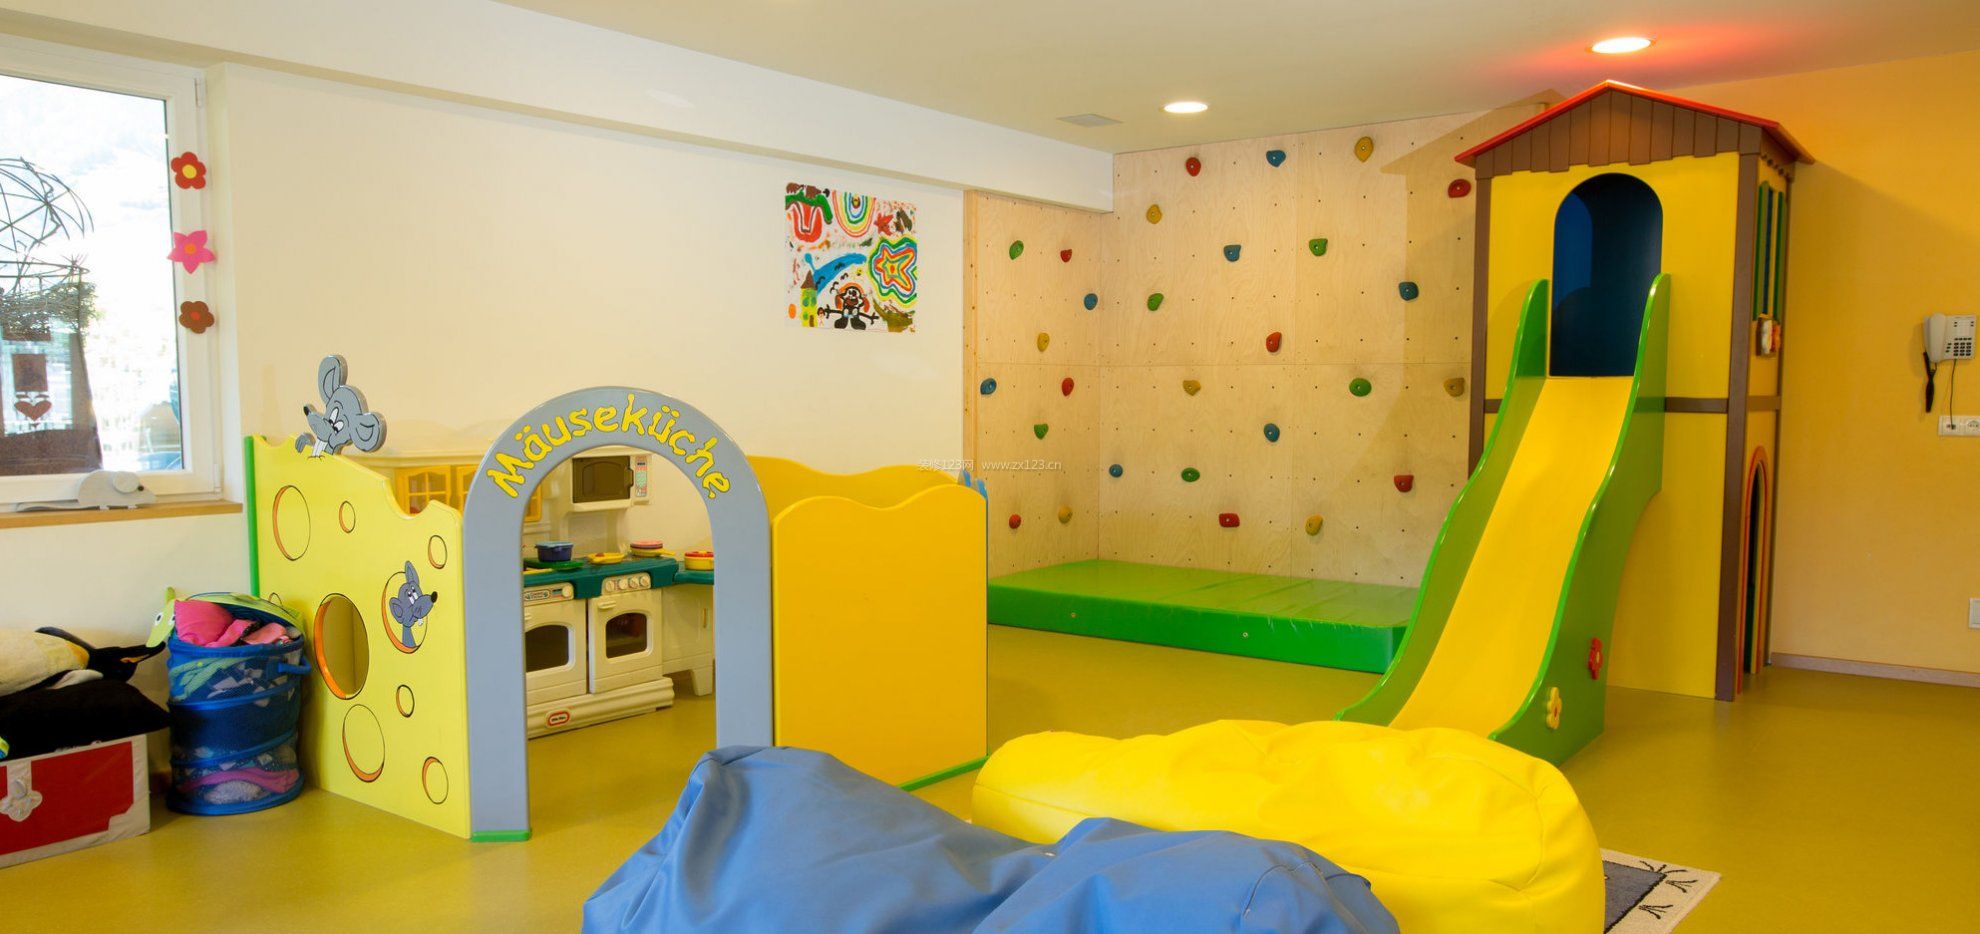 现代美式幼儿园墙面装修效果图